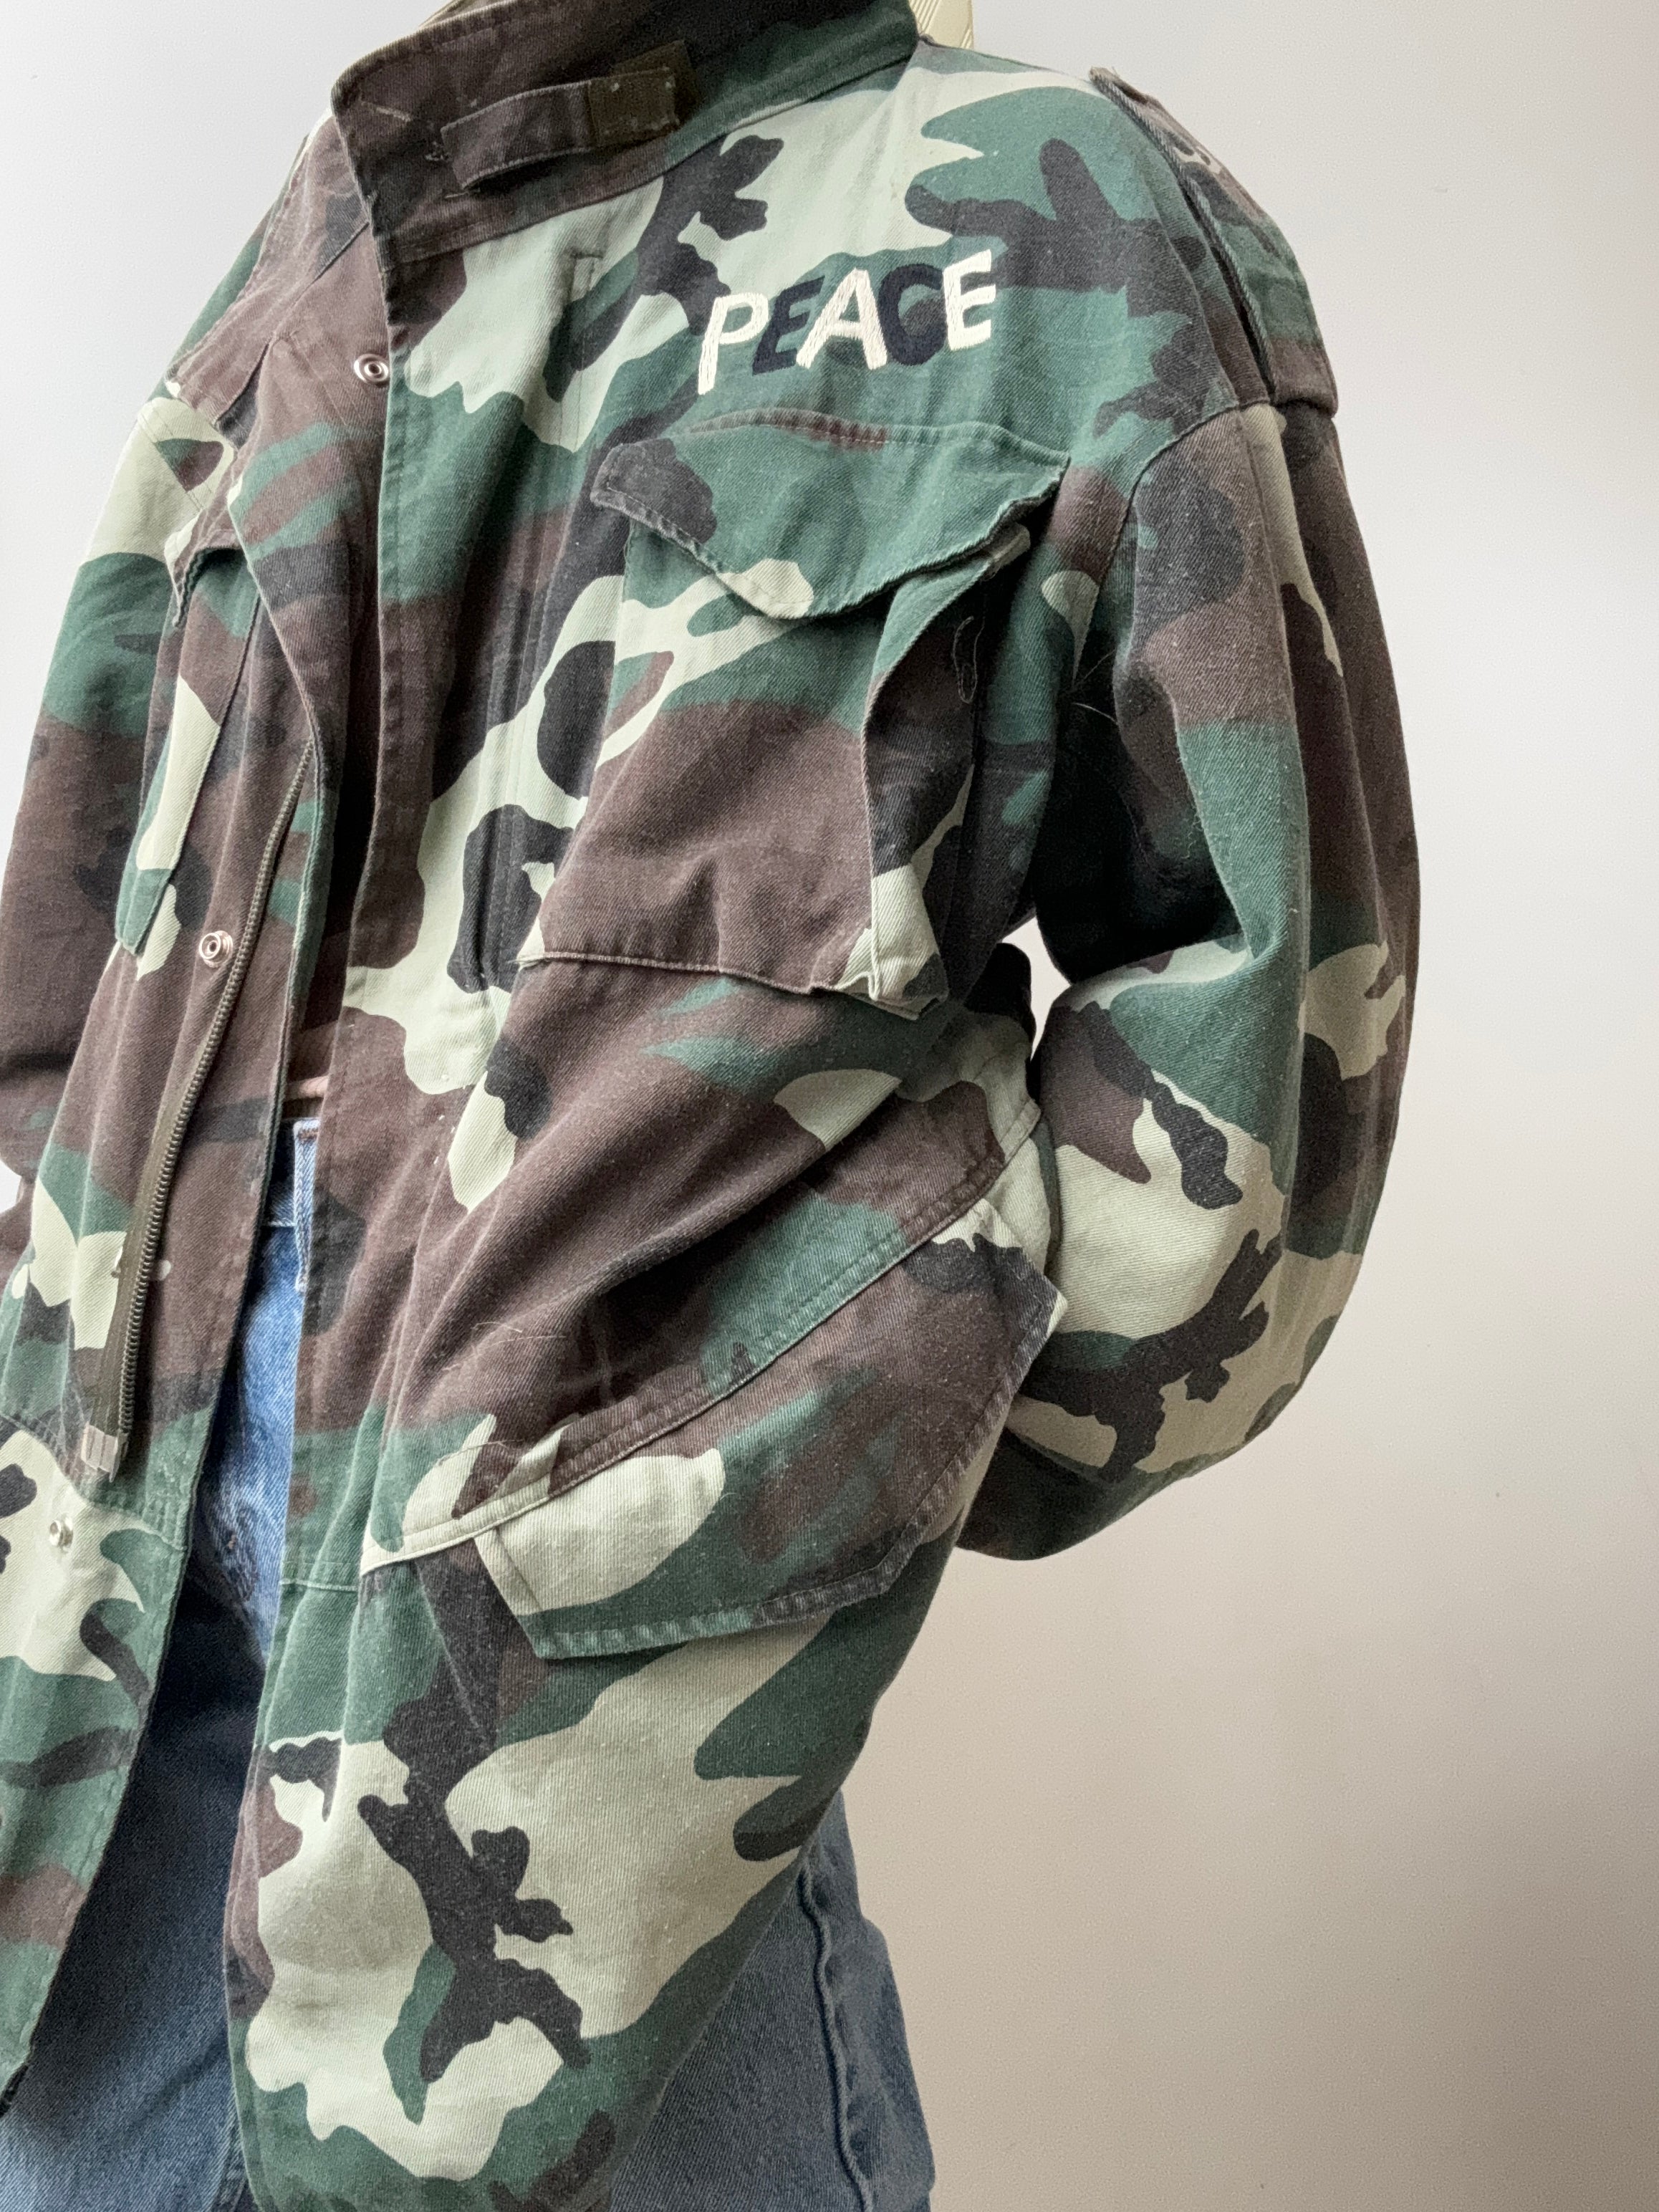 Future Nomads Jackets XLarge Love Peace Army Jacket Camo Padded Jacket